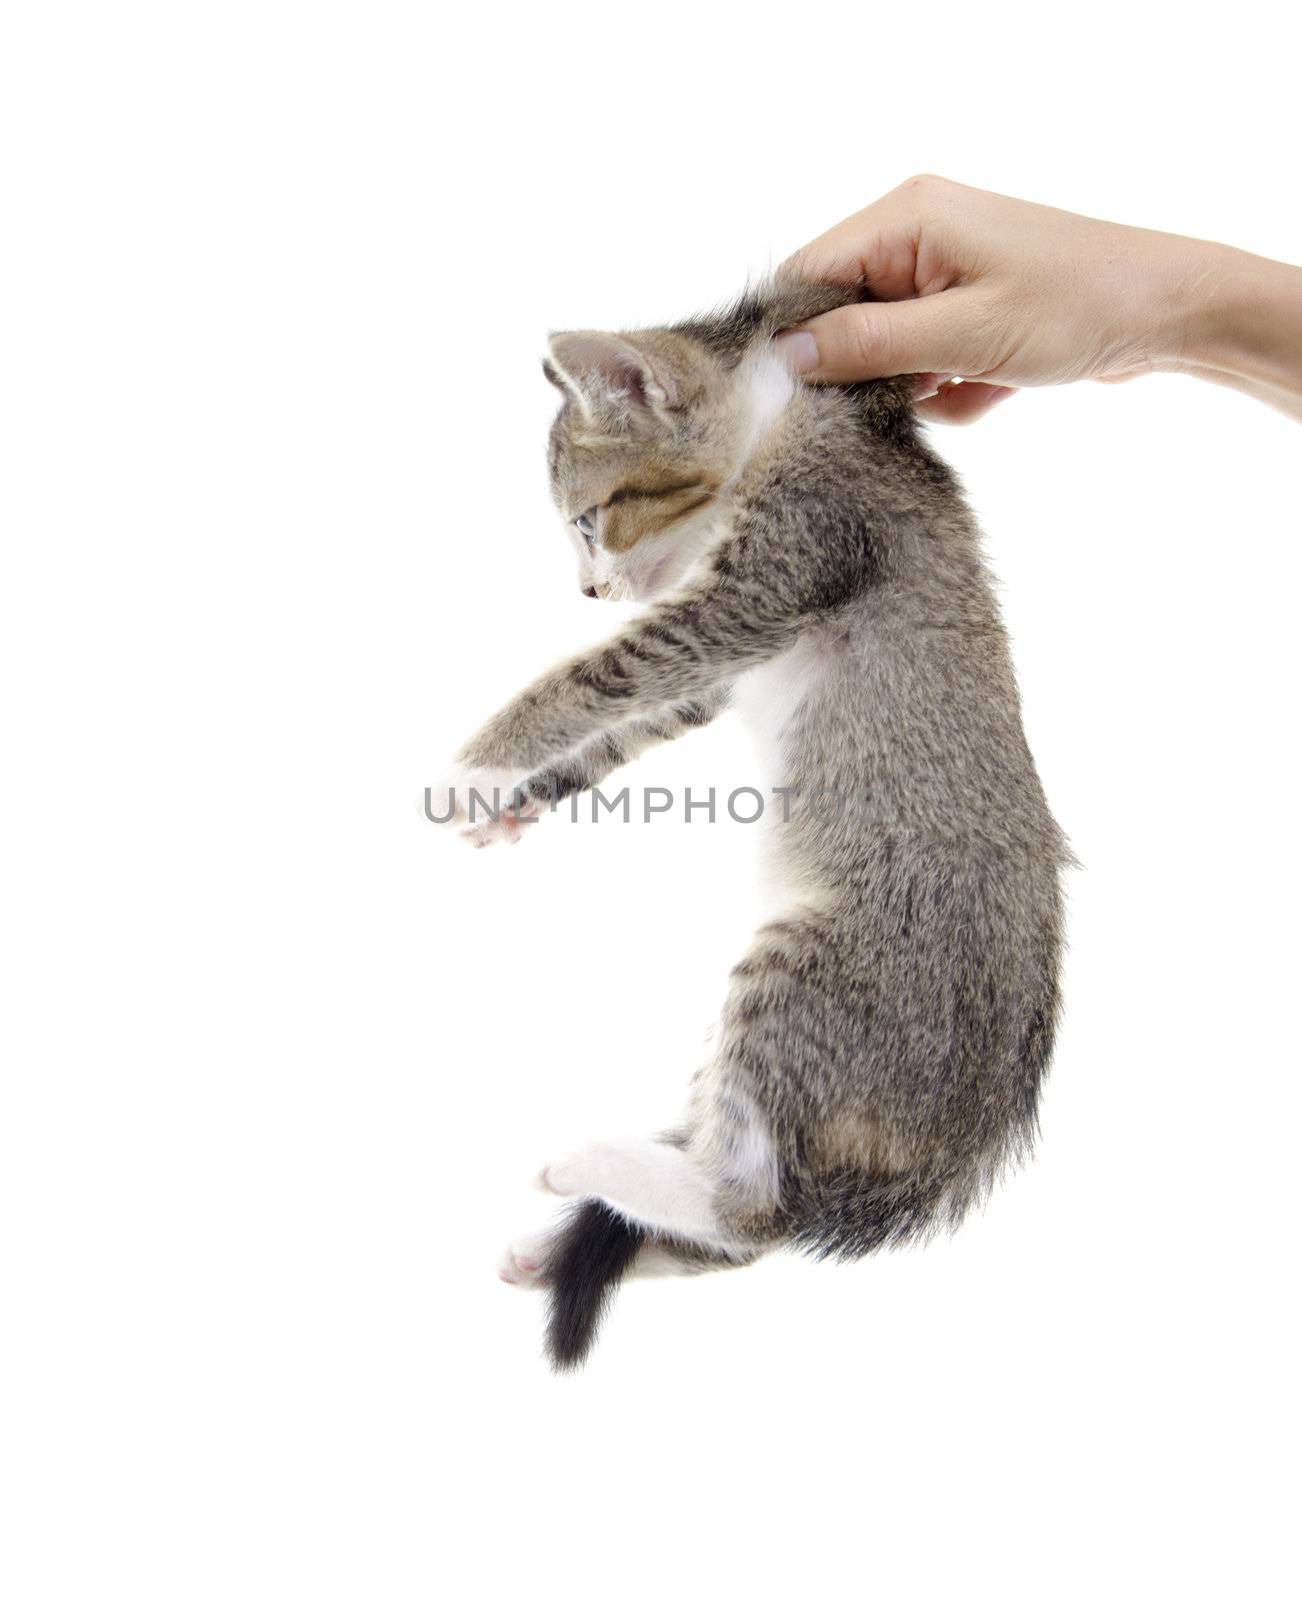 kitten being hold